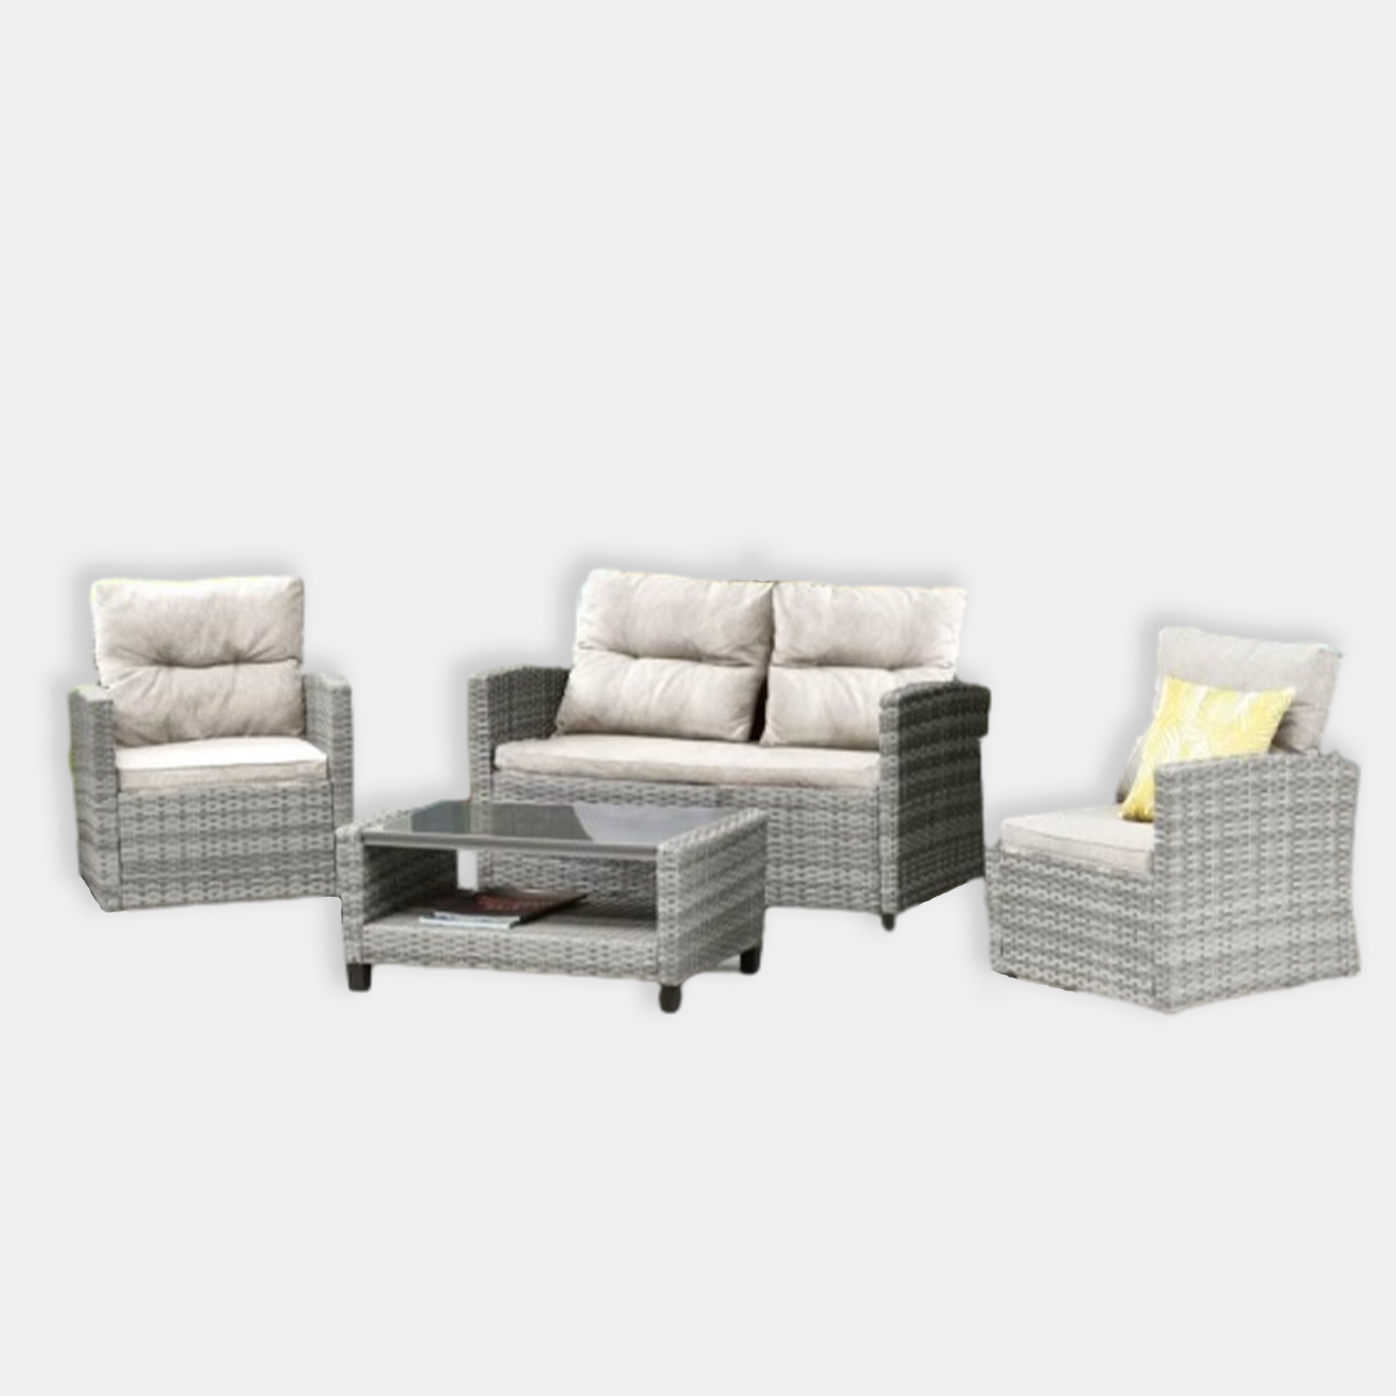 Комплект плетеной мебели с диваном AFM-804 (4 персоны)